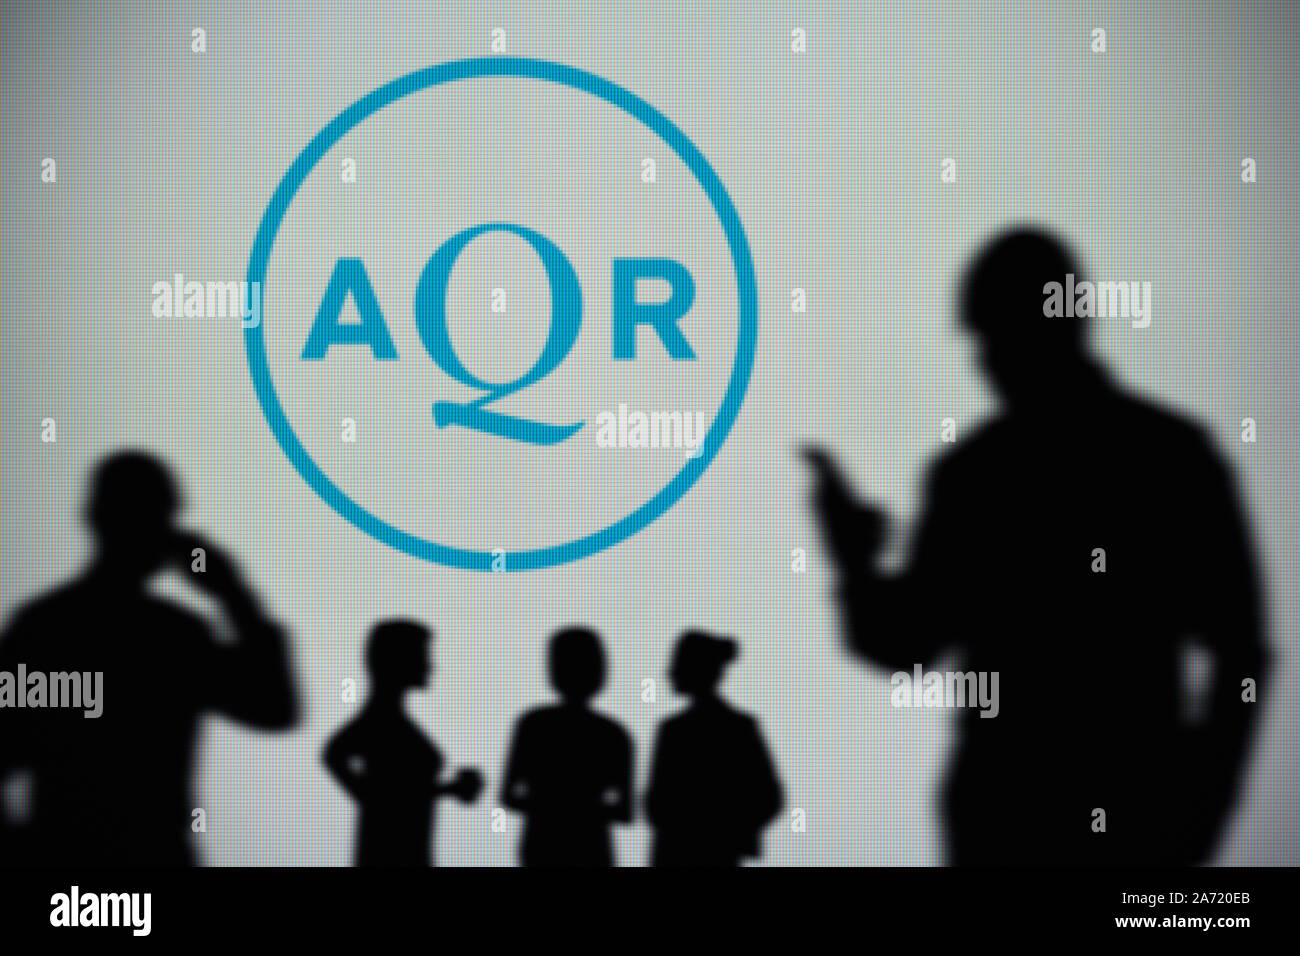 L'AQR Capital Management logo est visible sur un écran LED à l'arrière-plan tandis qu'une silhouette personne utilise un smartphone (usage éditorial uniquement) Banque D'Images